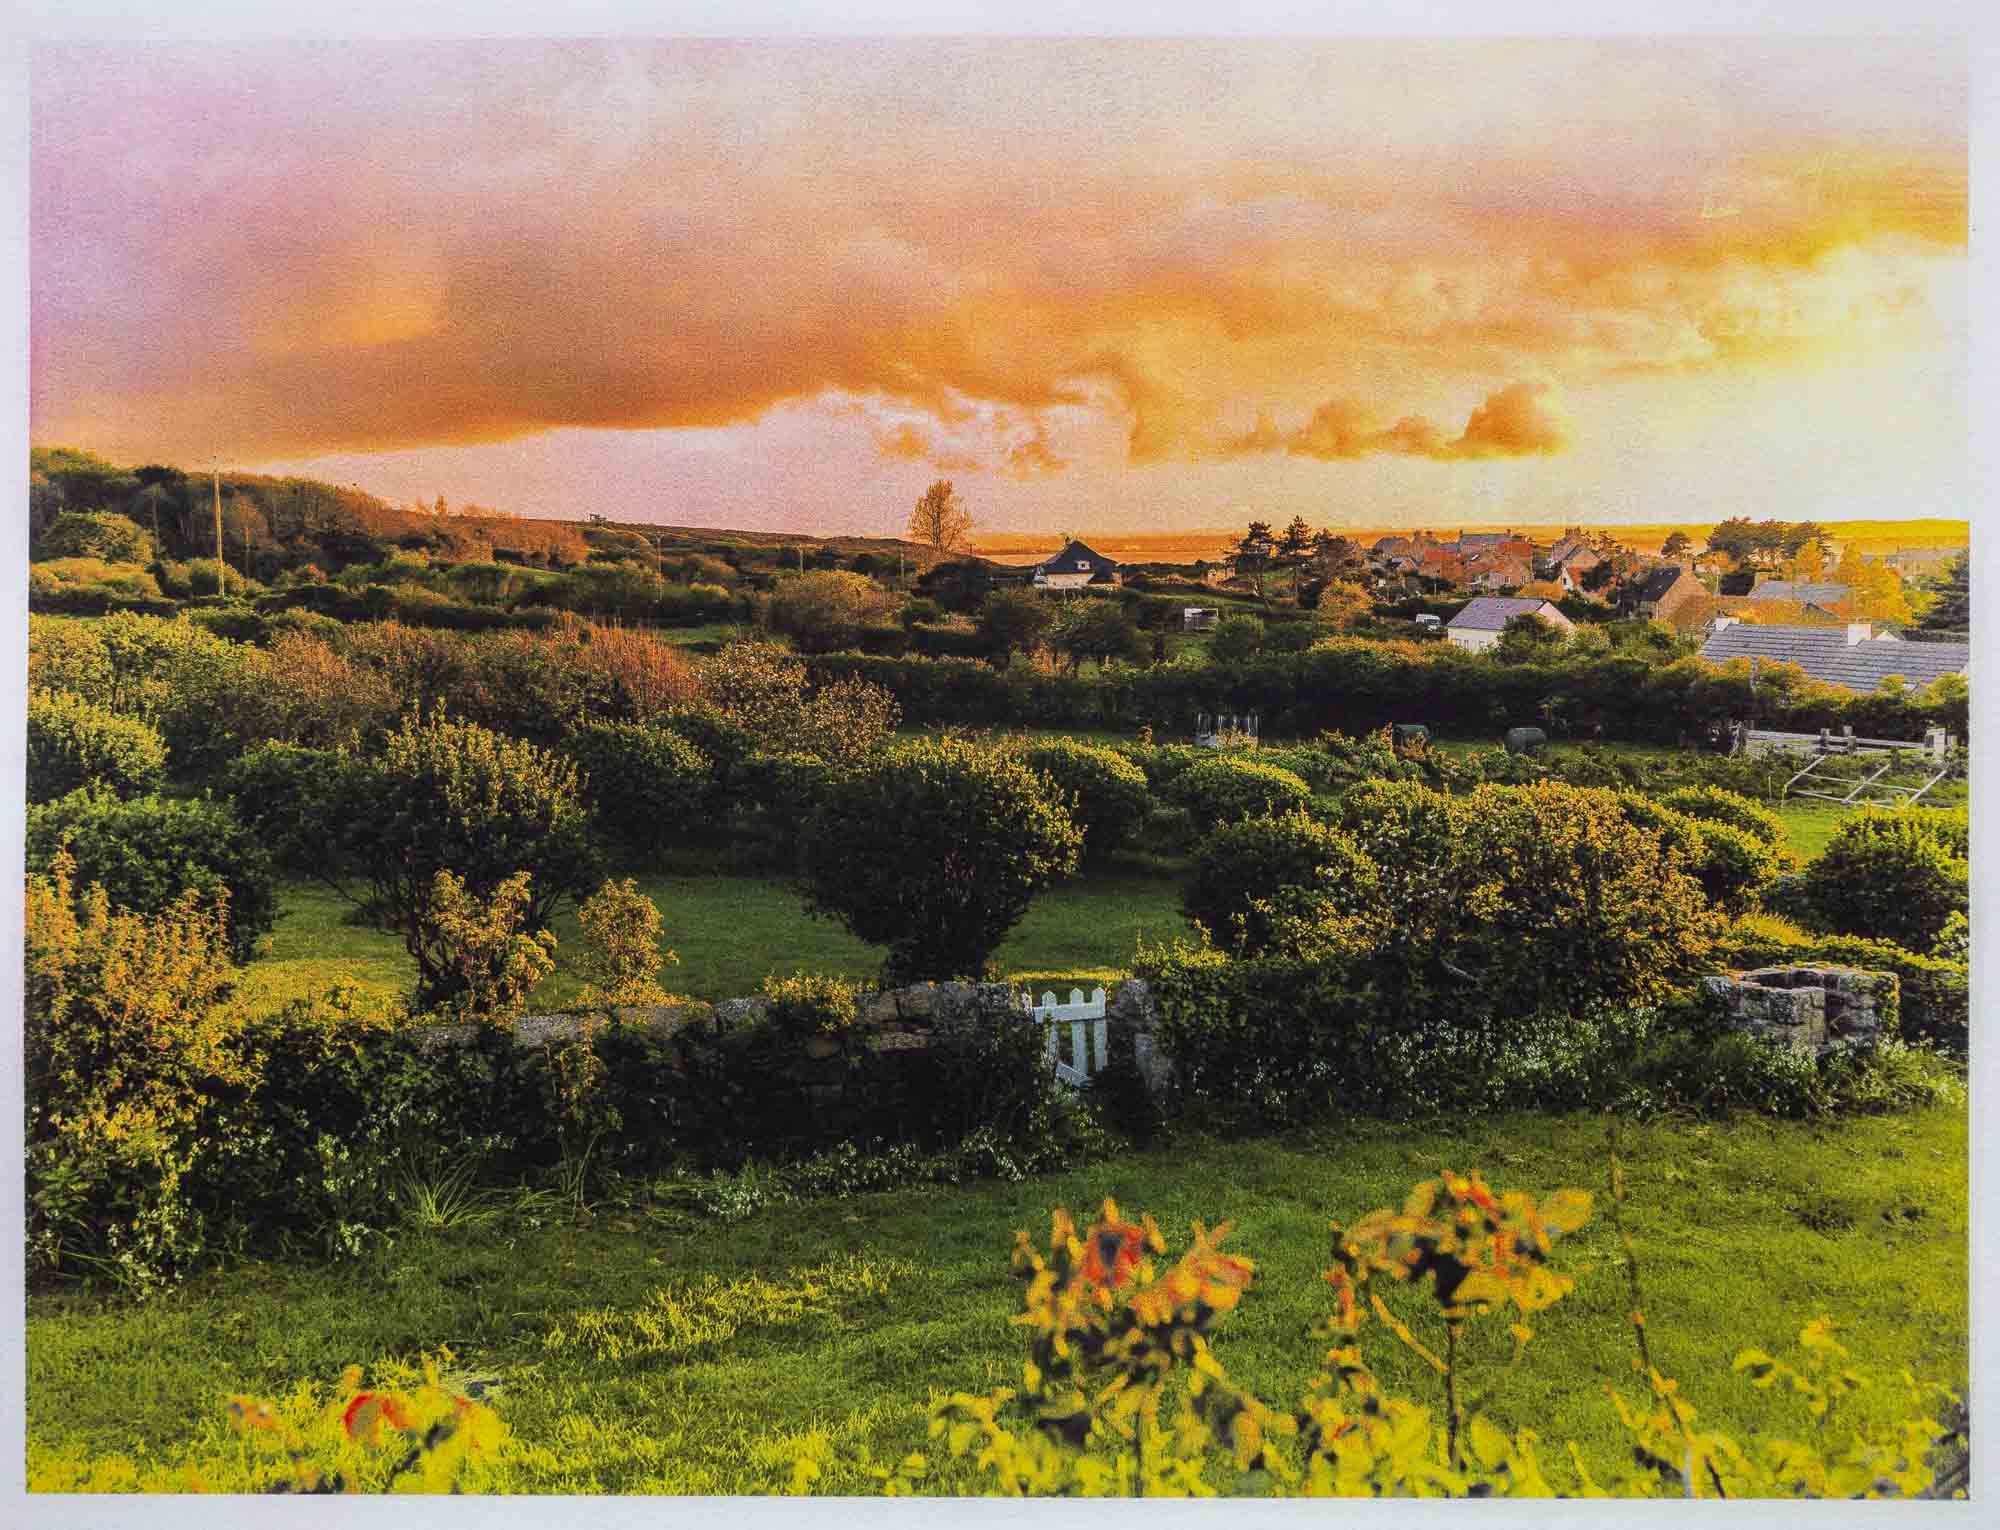 The Shire, Fermanville, Cotentin, 2020 - quad-chrome gum on Bergger COT 320 © Elise Prudhomme